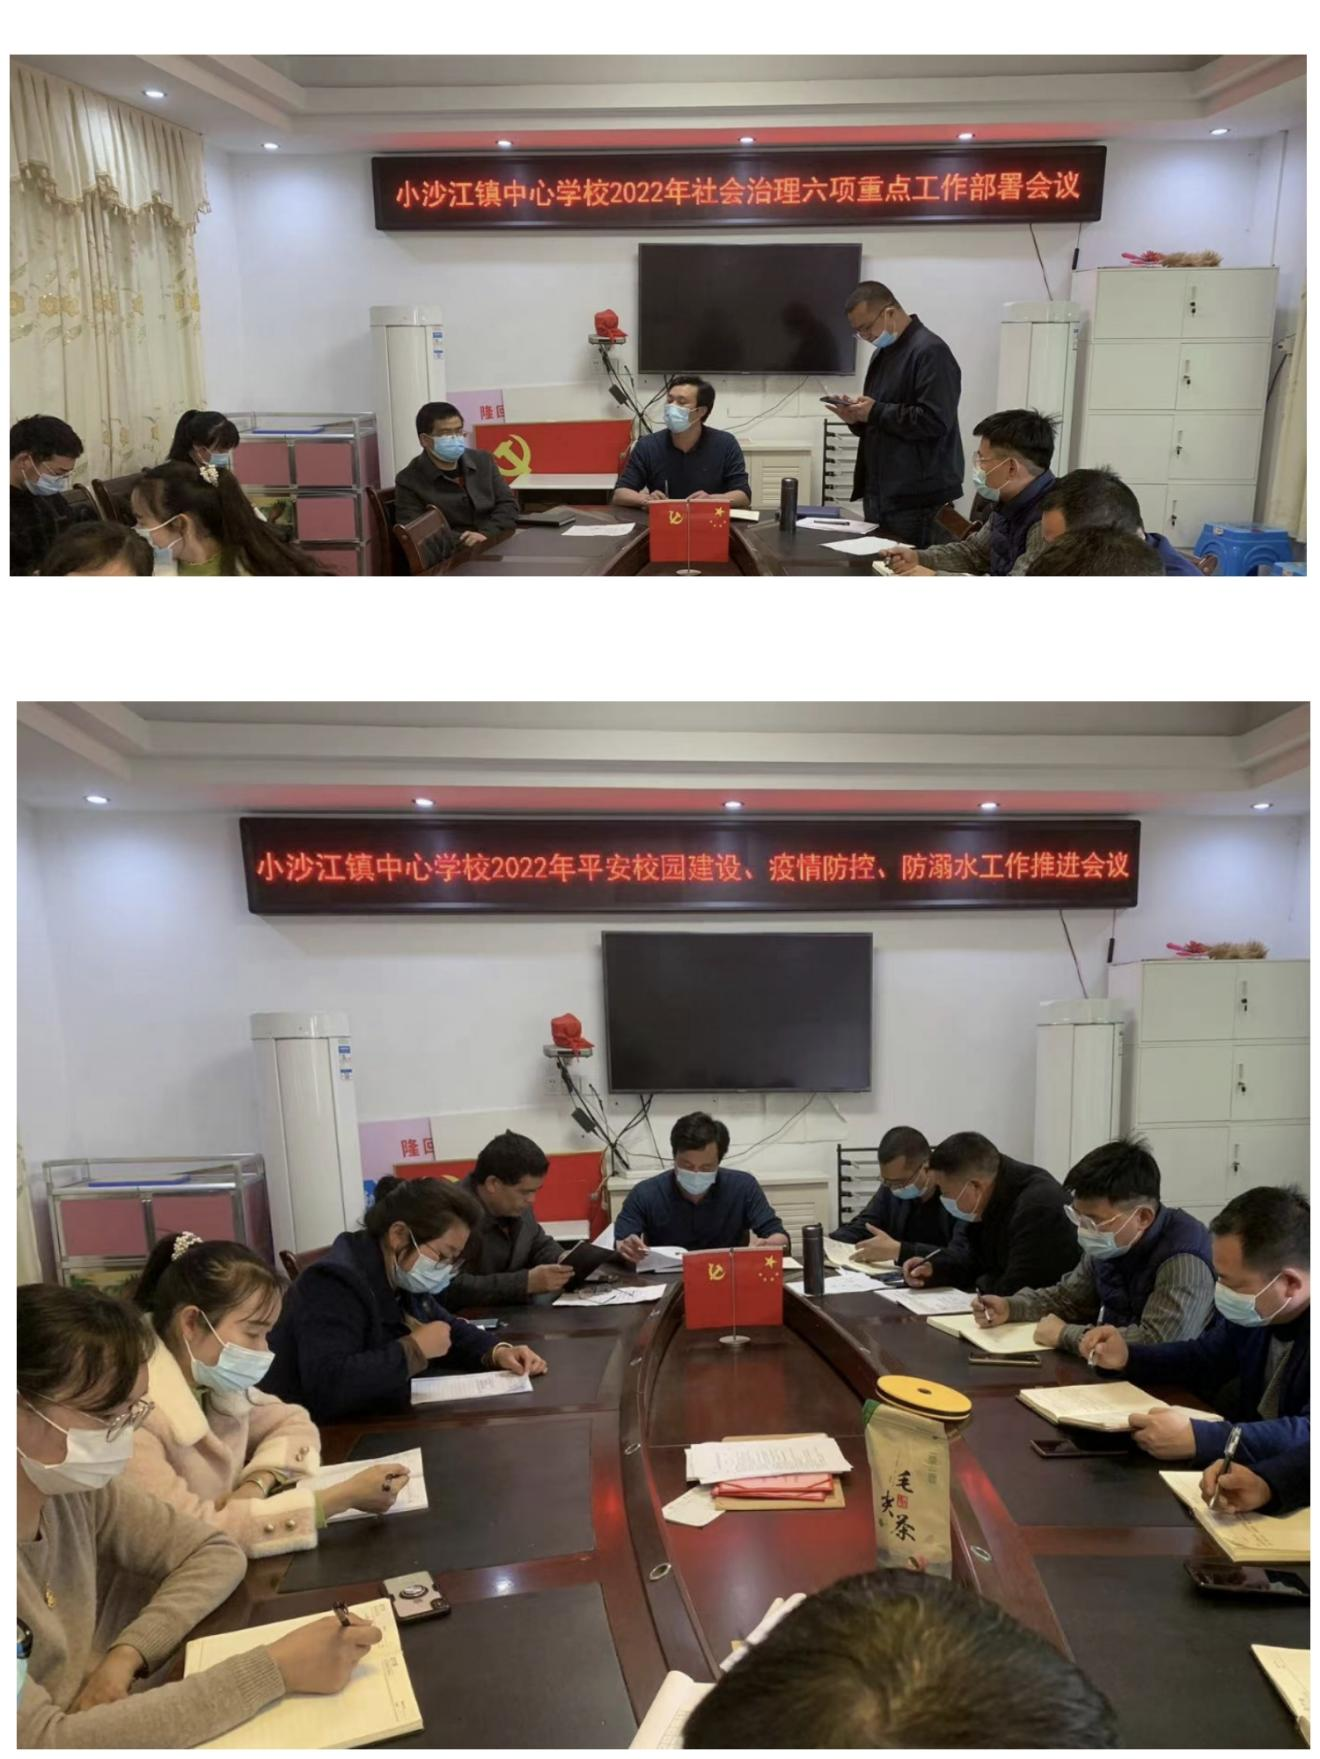 隆回县小沙江镇中心学校召开2022年社会治理六项重点工作部署会议